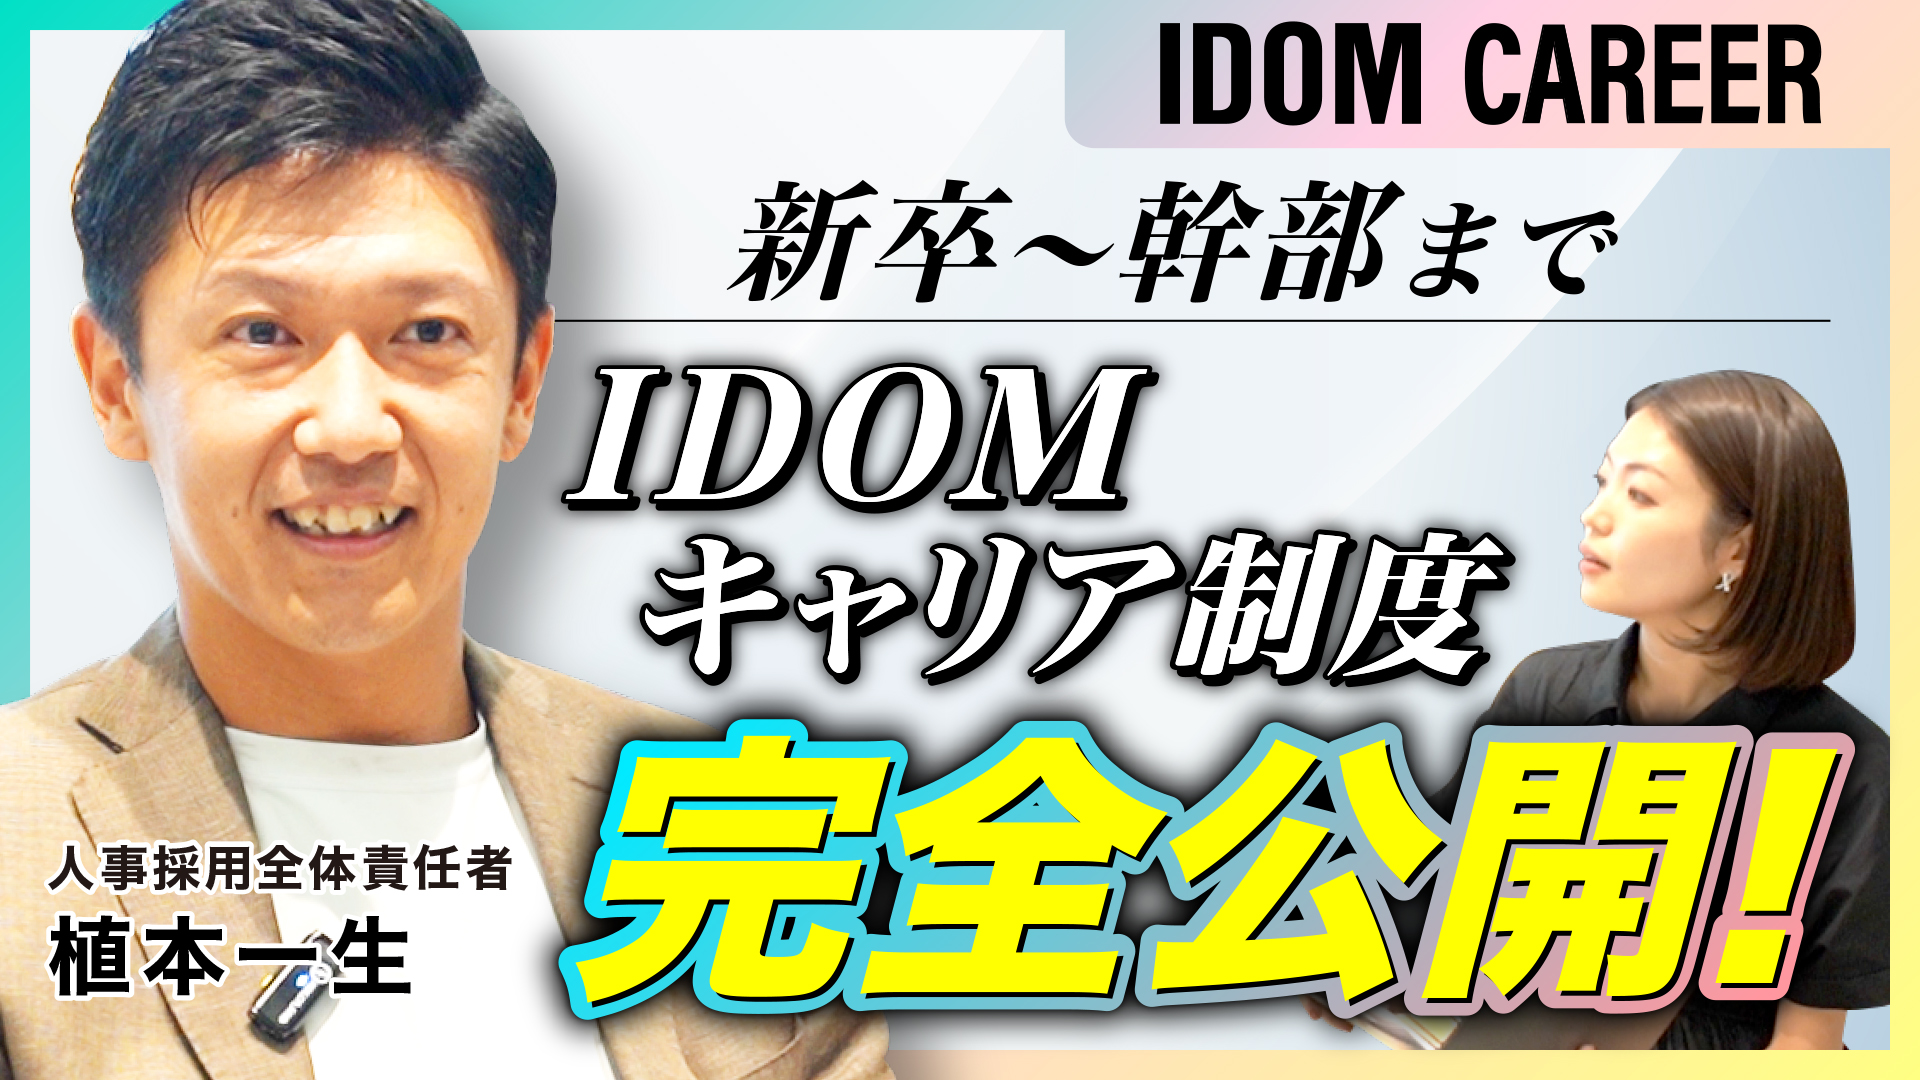 IDOM、採用情報をより身近に！新YouTubeチャンネル『IDOM採用チャンネル』始動